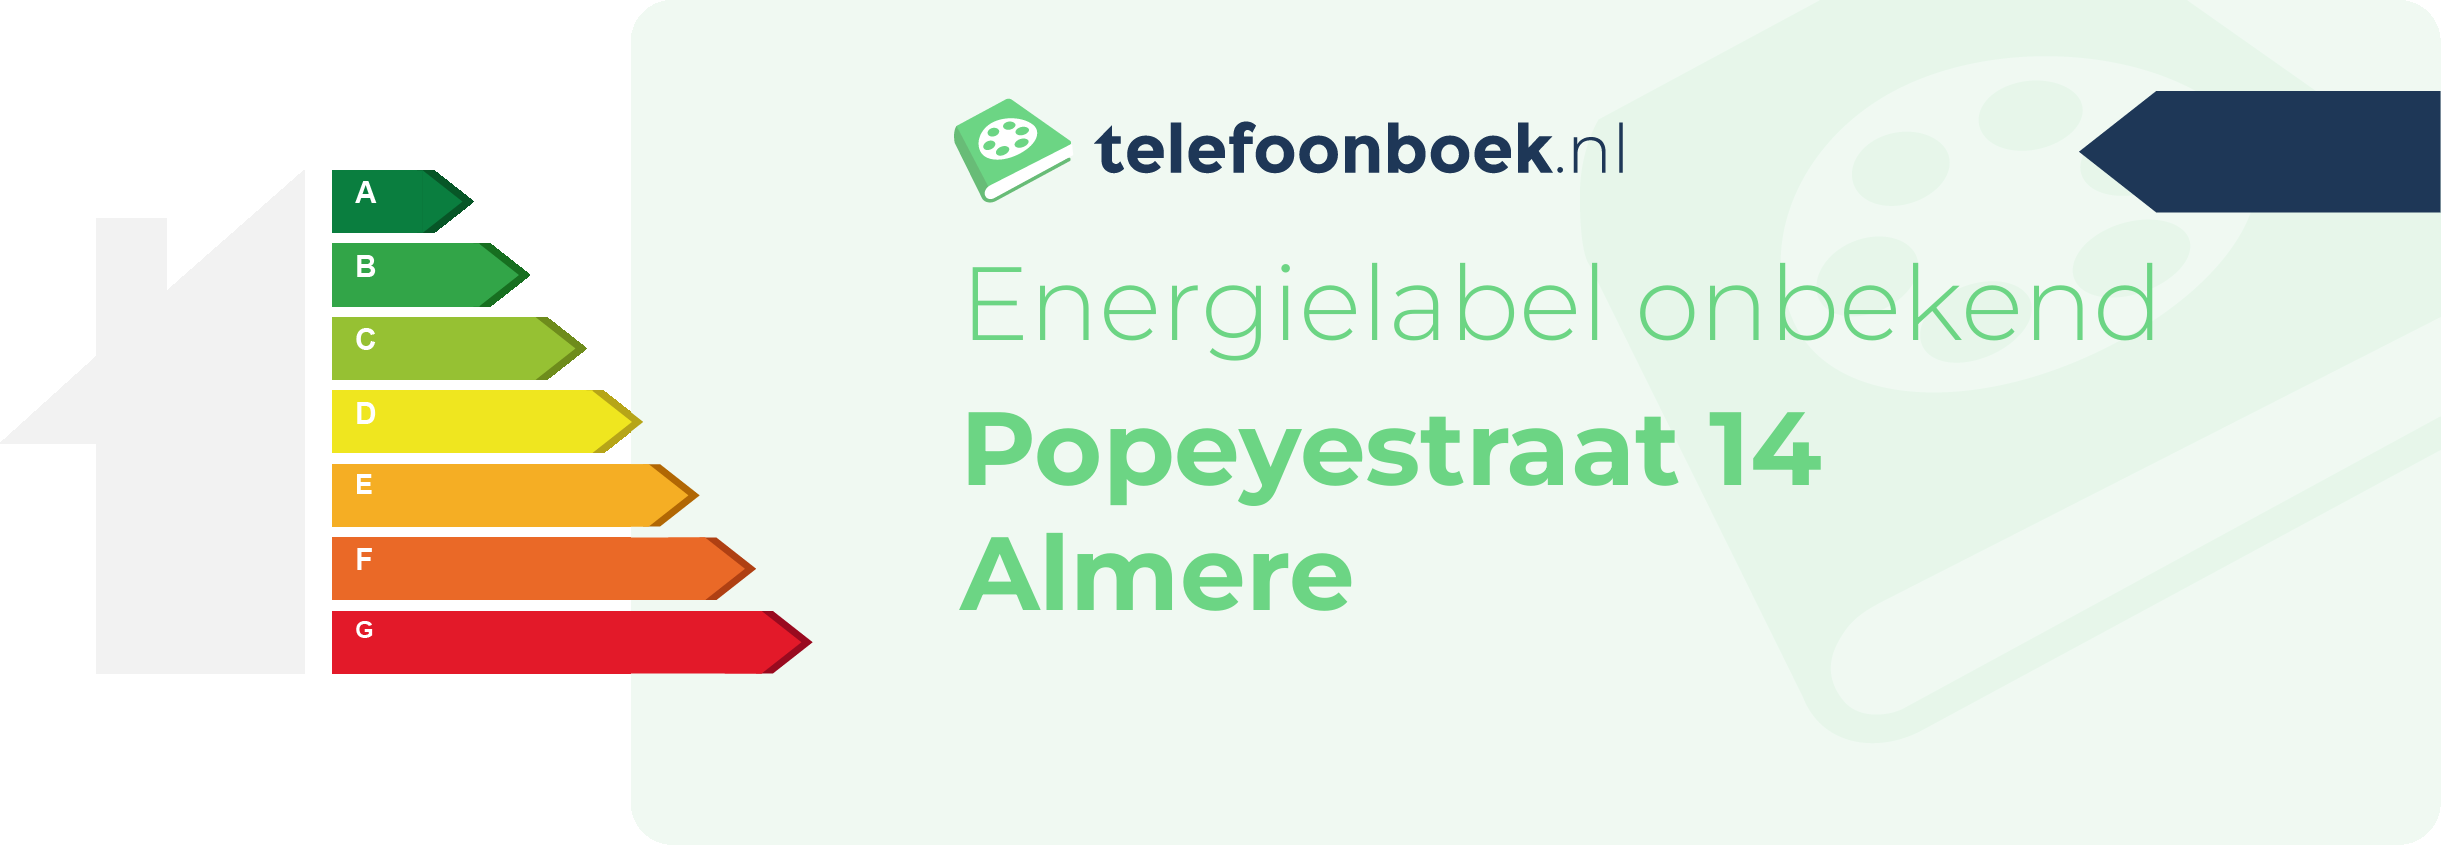 Energielabel Popeyestraat 14 Almere